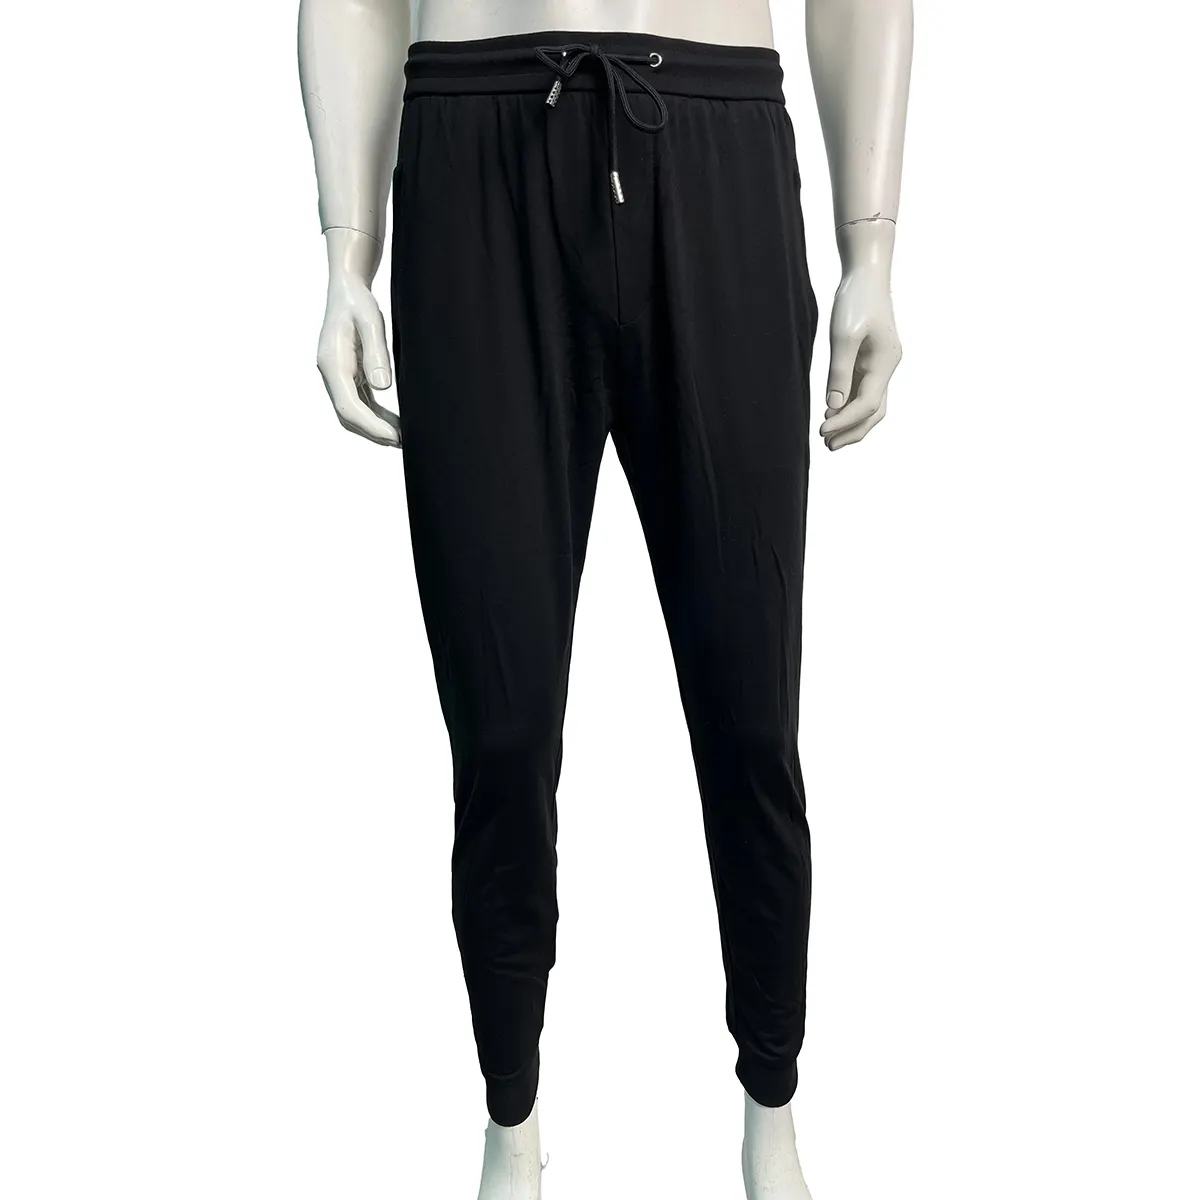 OEM कस्टम लोगो त्वरित सुखाने वाला रनिंग फिटनेस पेशेवर स्पोर्ट्स कार्गो पैंट पुरुषों के लिए साइड पॉकेट के साथ कफयुक्त पतलून